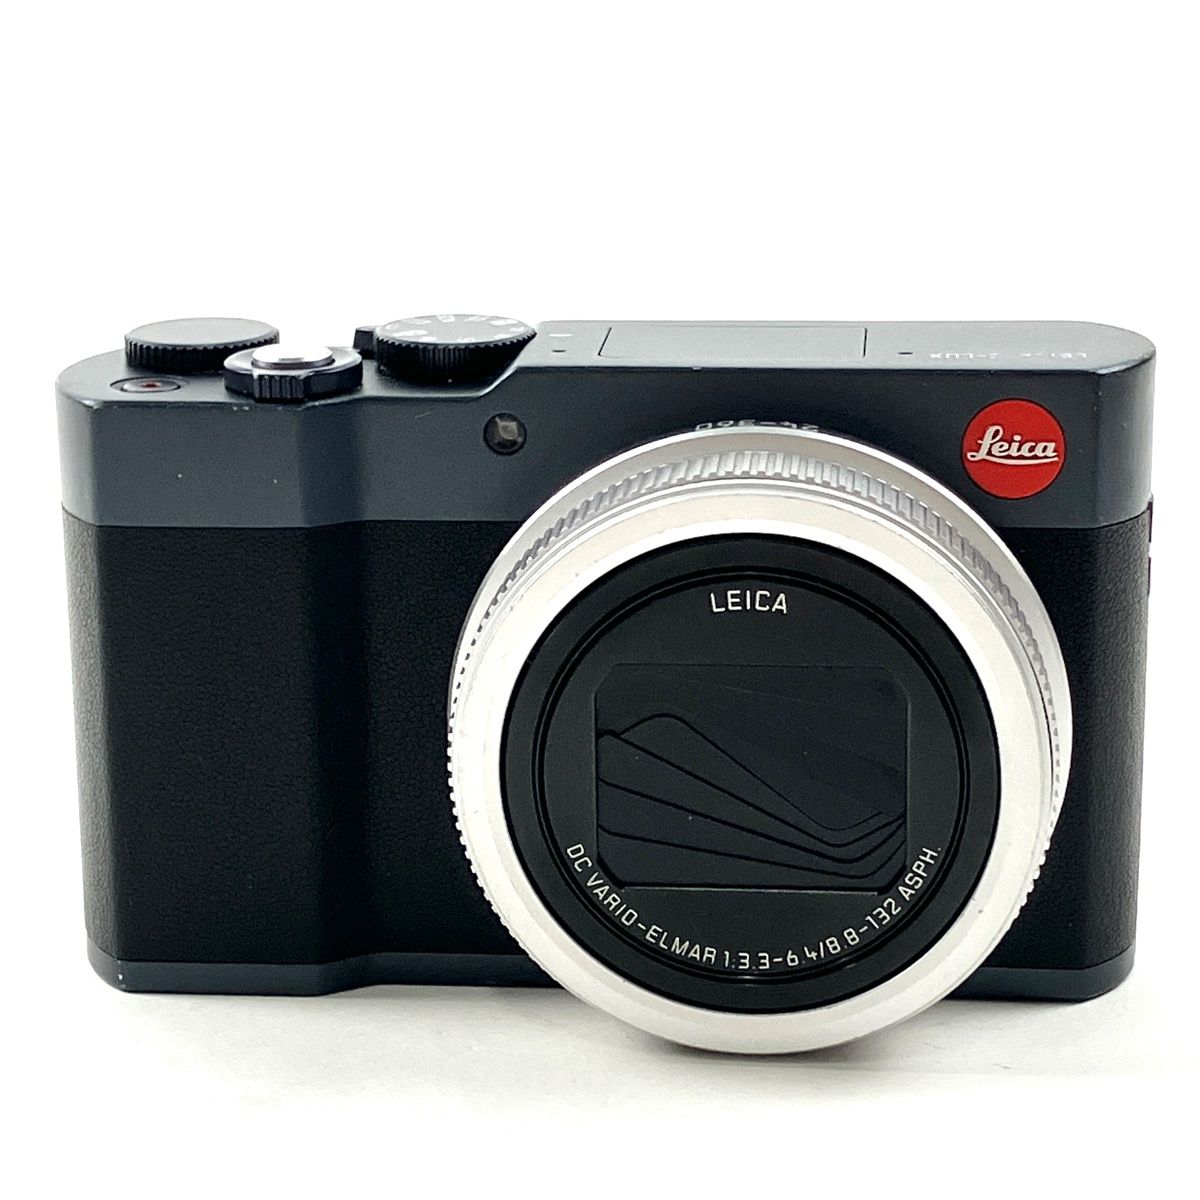 ライカ LEICA C-LUX ミッドナイトブルー コンパクトデジタルカメラ